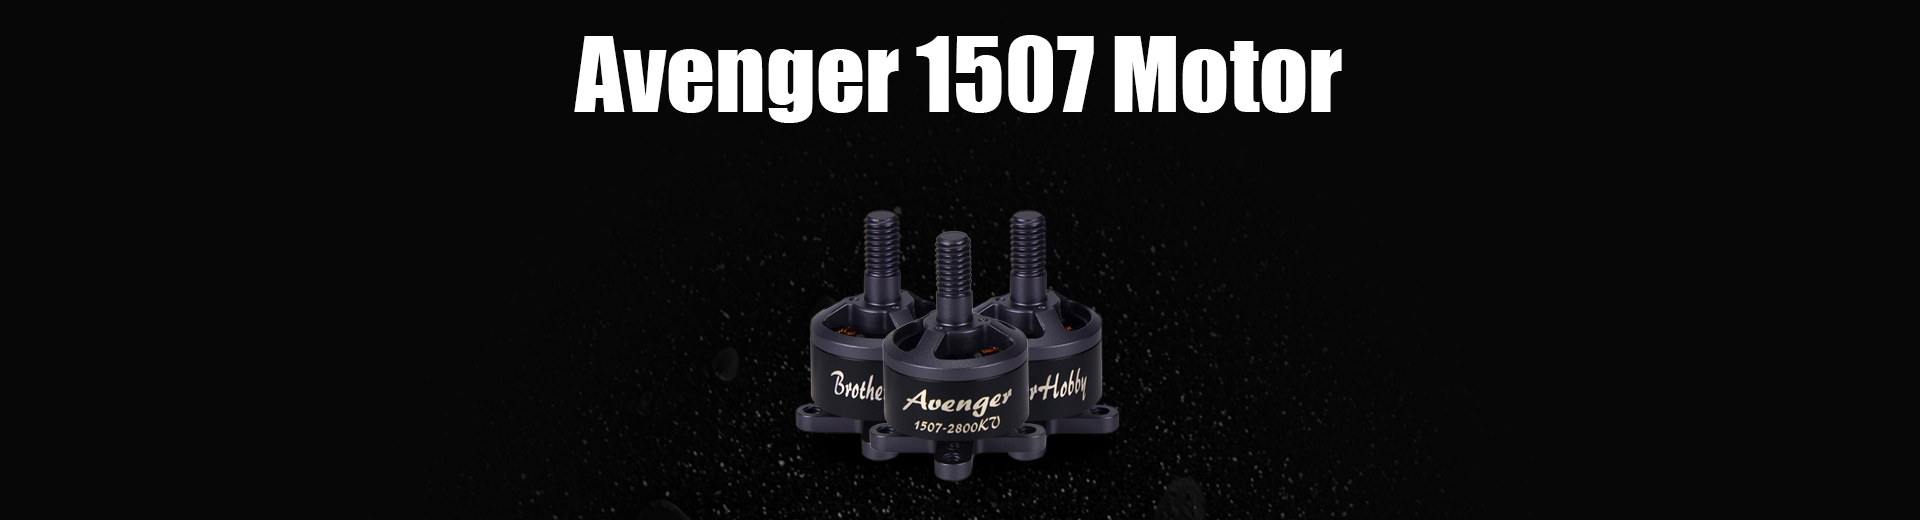 Avenger 1507 Motor